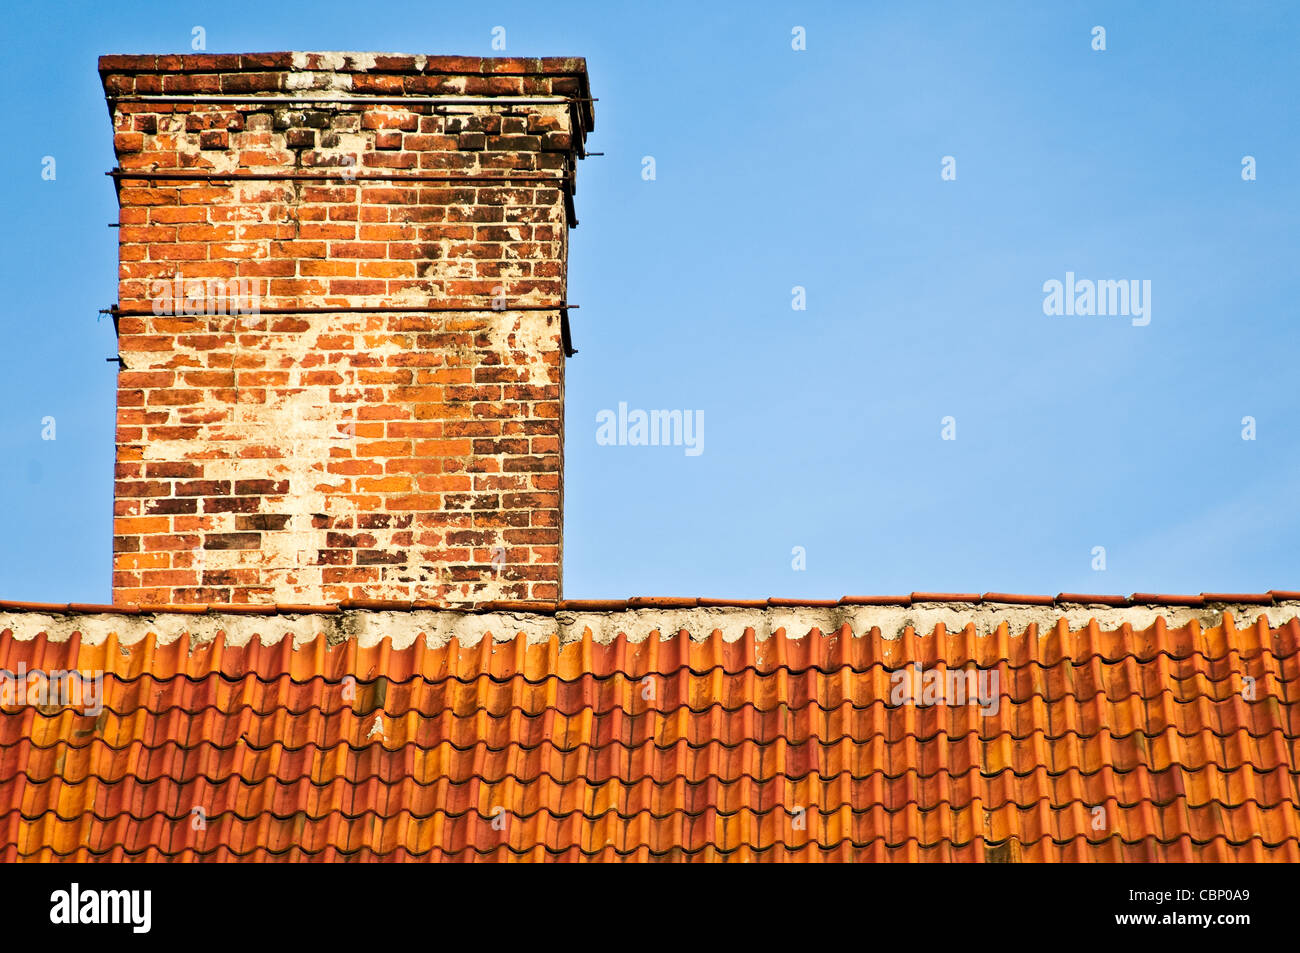 Rosso e arancione in alto sul tetto della vecchia casa in mattoni con camino e cielo blu in background Foto Stock